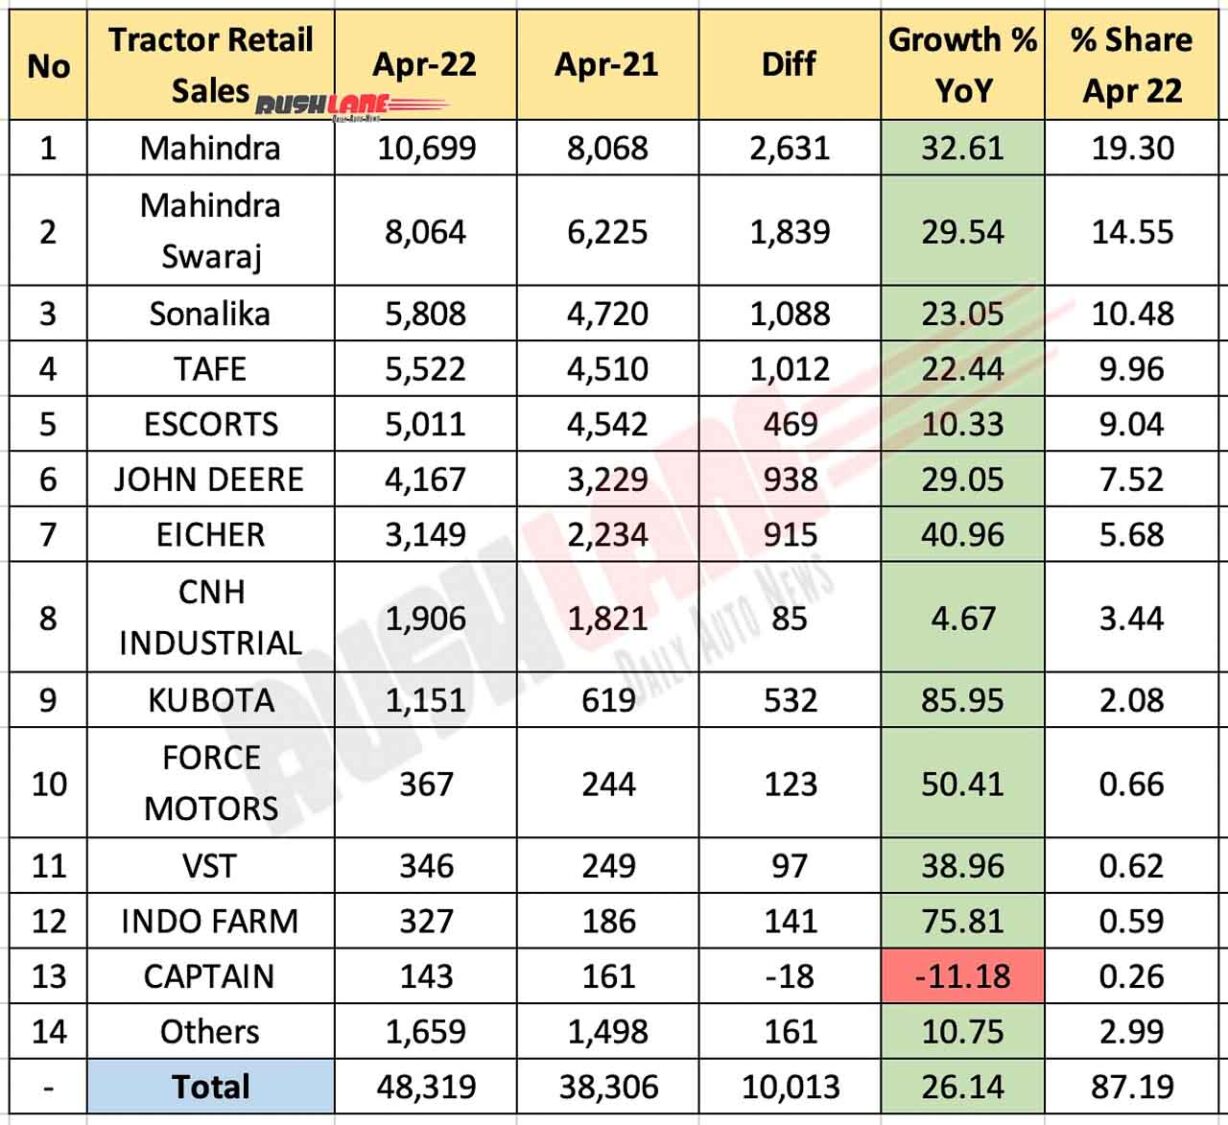 Tractor Sales April 2022 vs April 2021 (YoY)